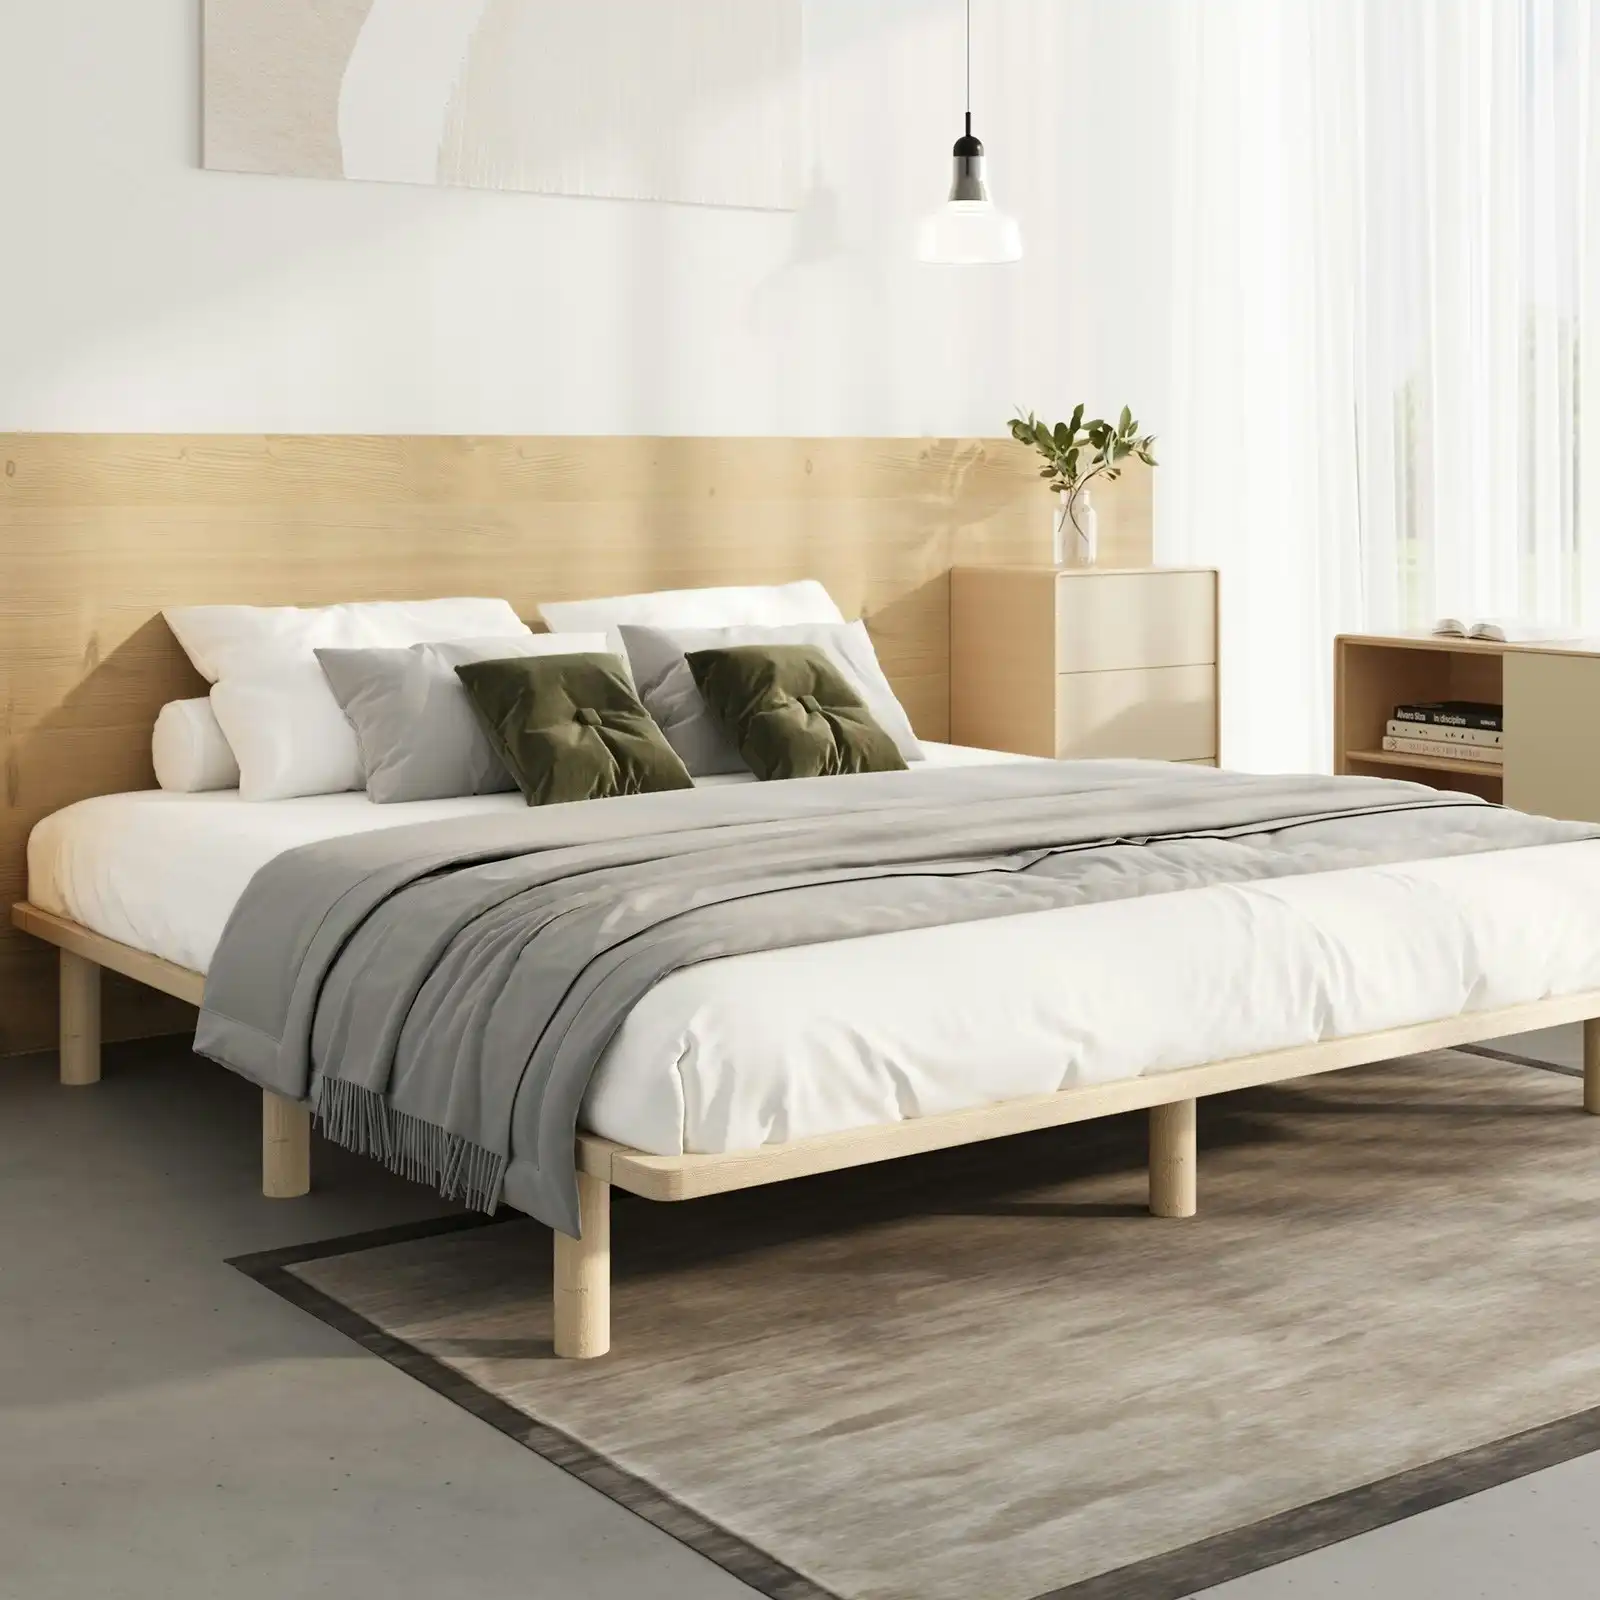 Oikiture Bed Frame King Size Wooden Bed Base Platform Timber